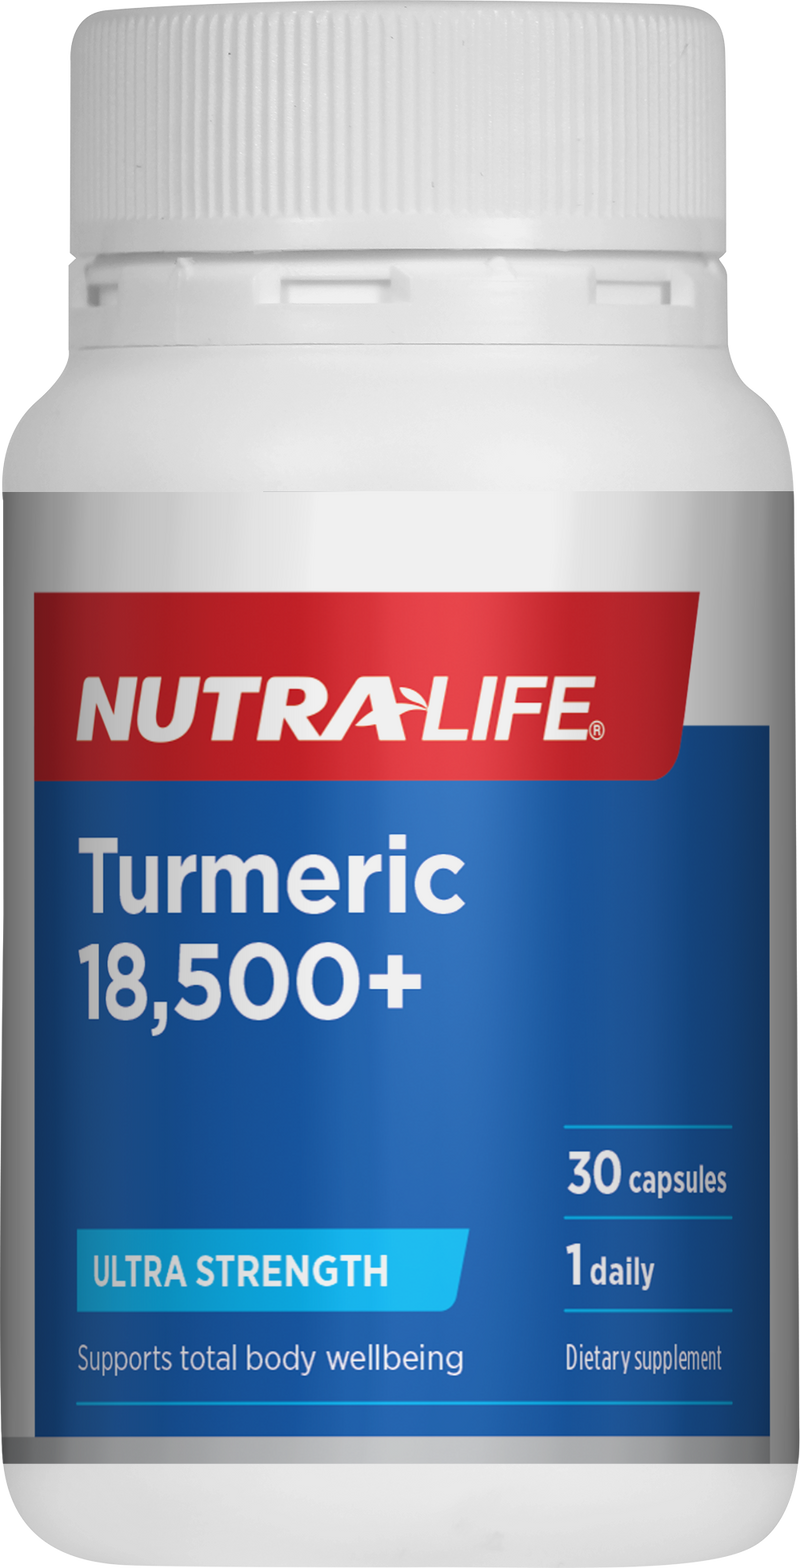 NL Turmeric 18500mg + Ult Str 30cap